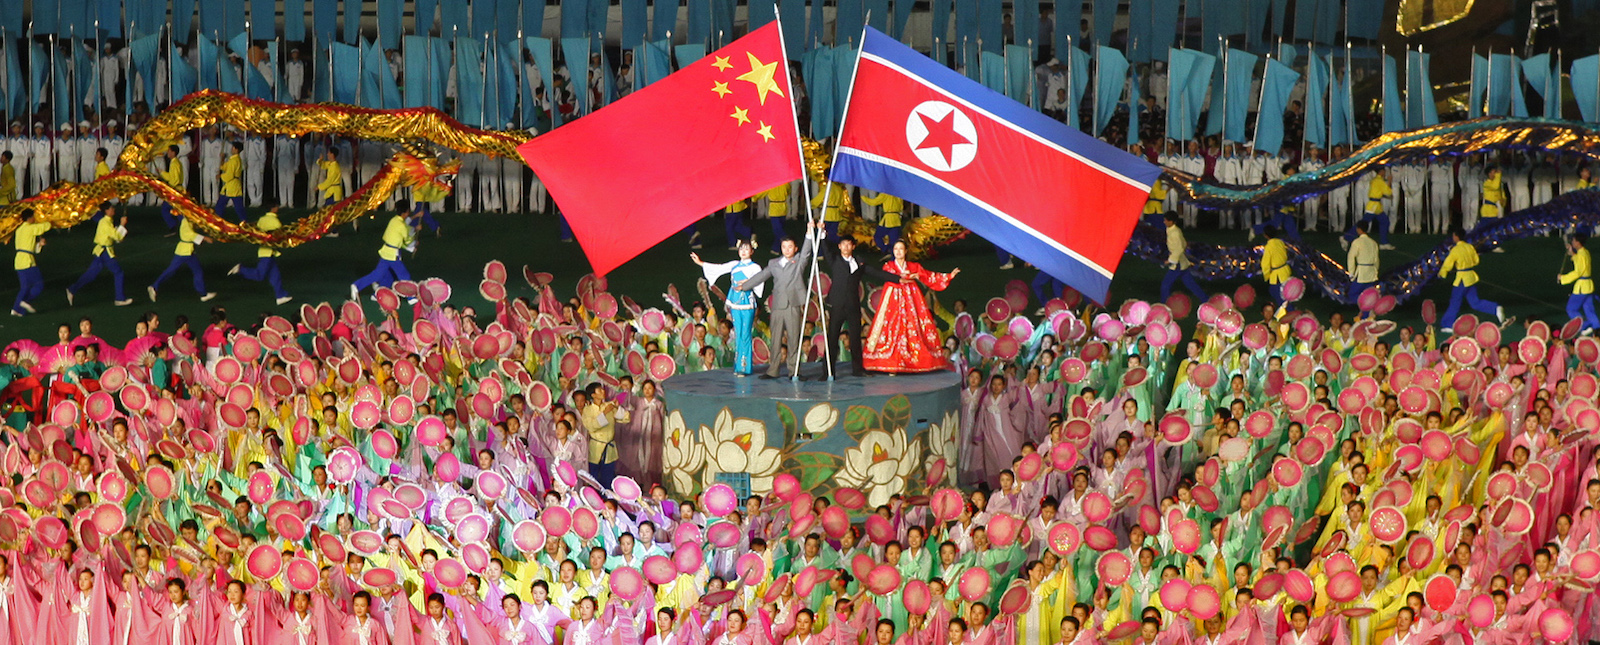 Επίσκεψη κινεζικής αντιπροσωπείας αύριο στη Βόρεια Κορέα για την 70ή επέτειο της εκεχειρίας με την οποία τερματίστηκε ο πόλεμος της Κορέας (1950-1953)